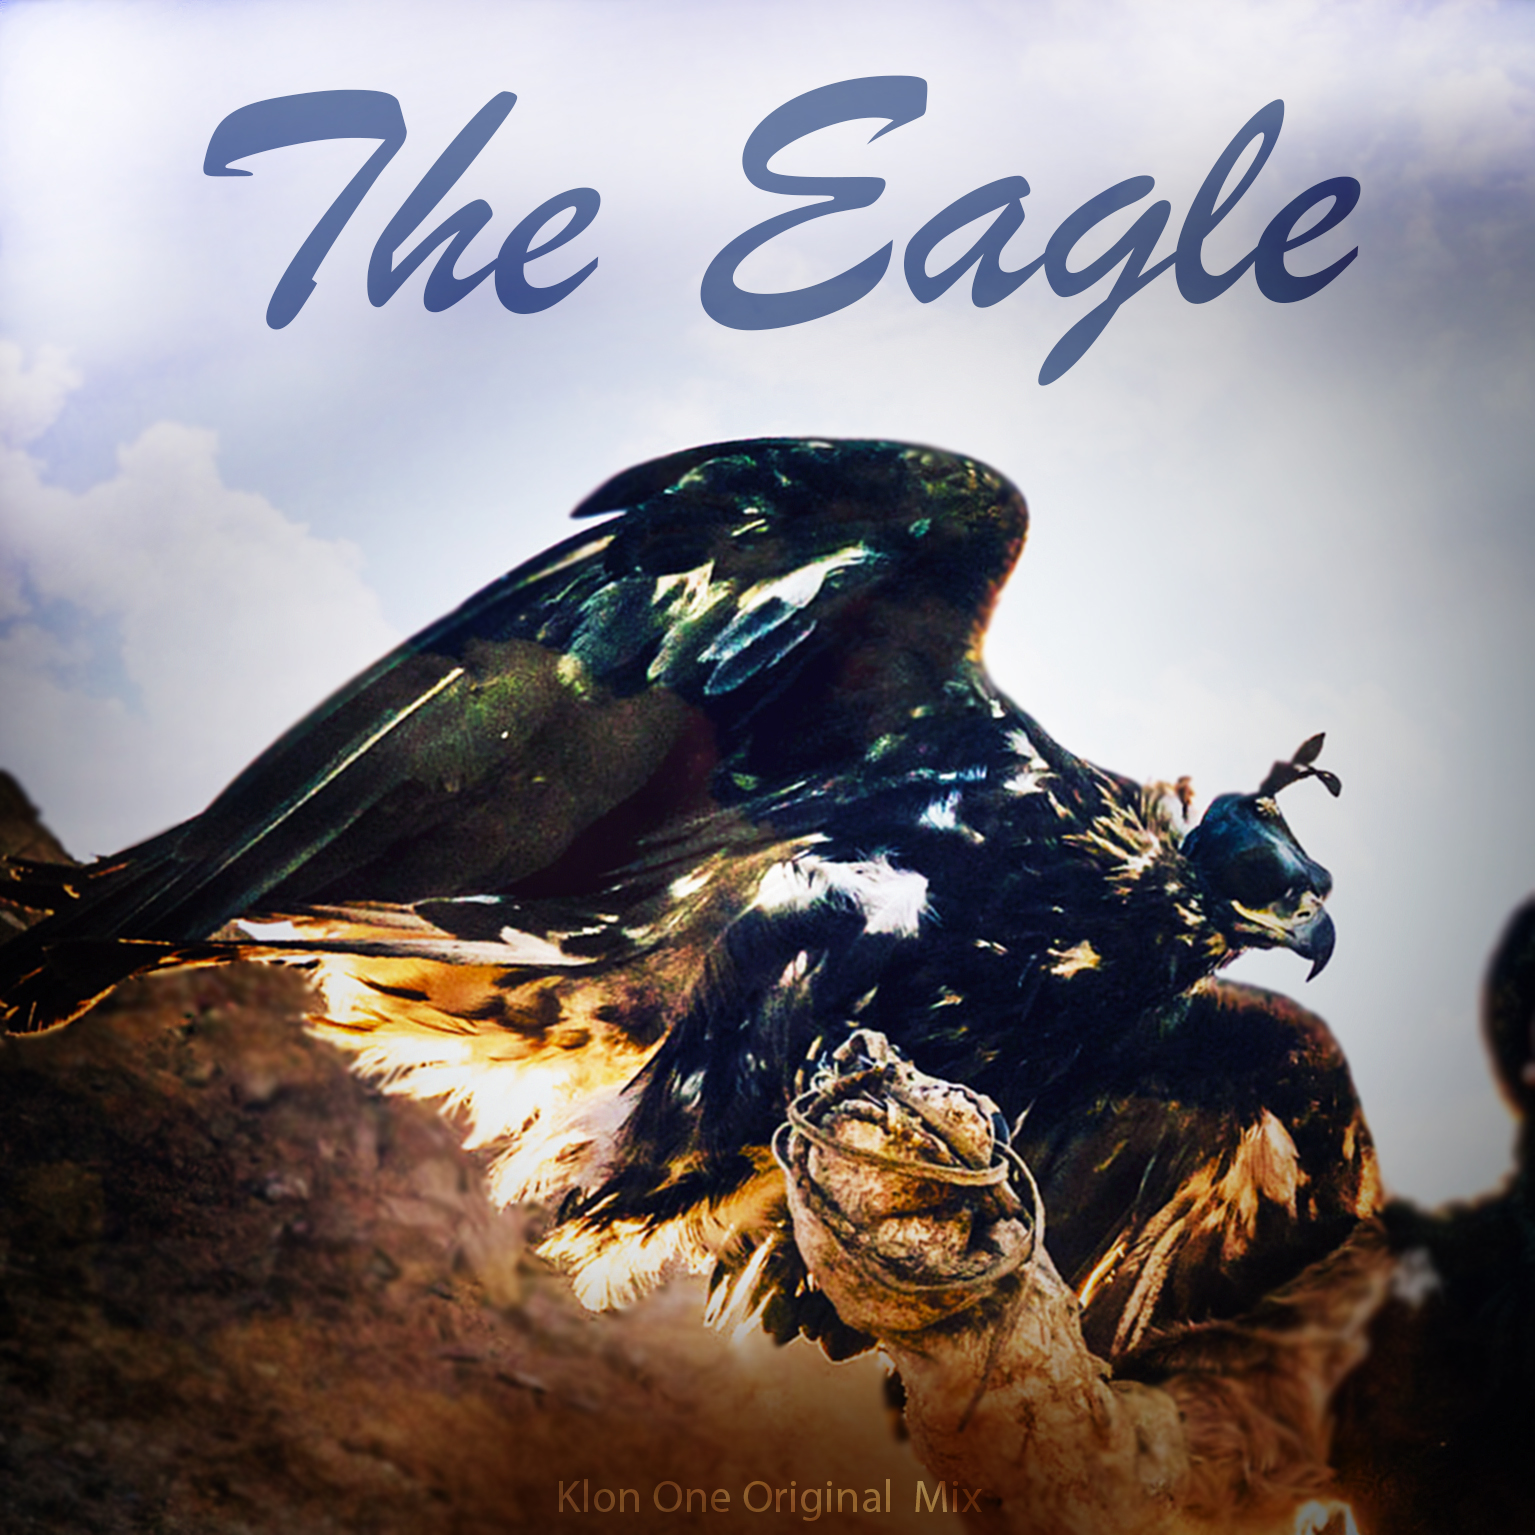 THE EAGLE